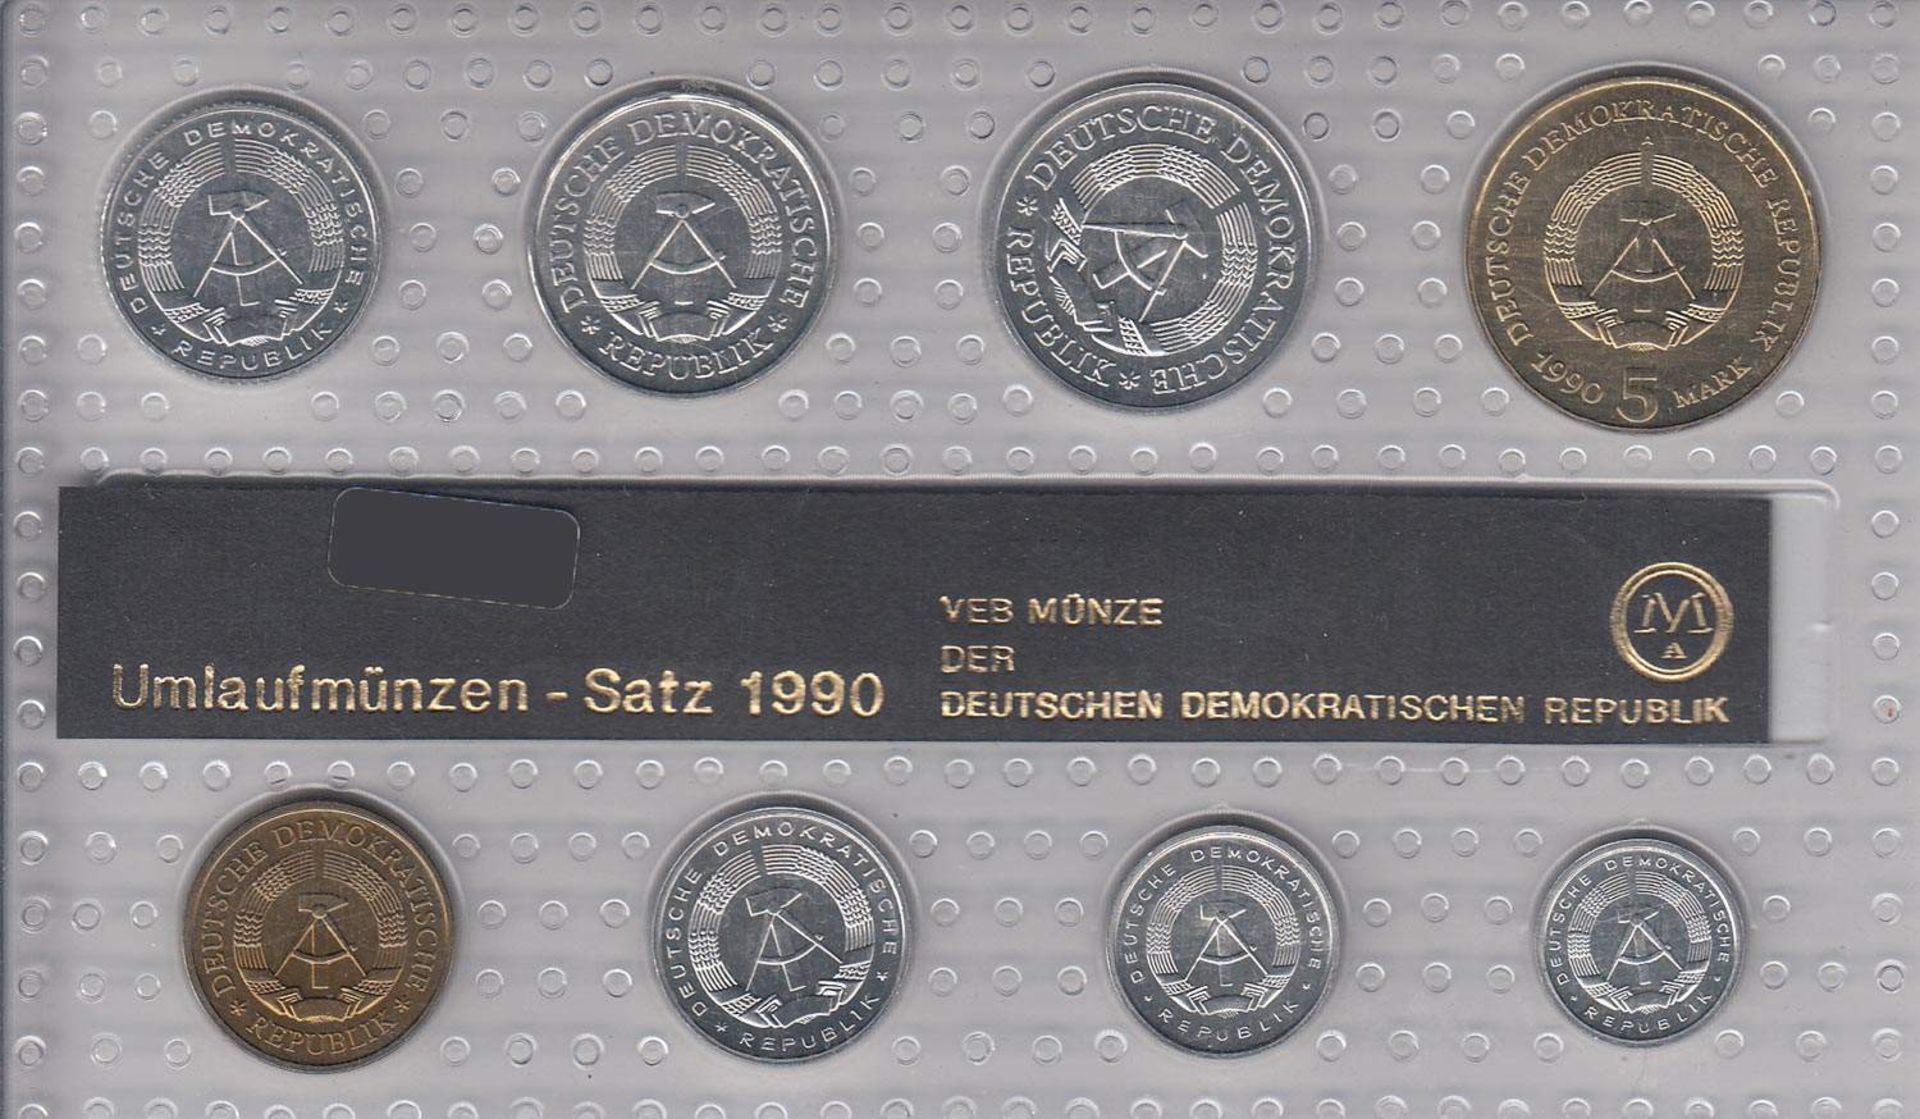 MünzsatzDDR 1990, 5 Mark - 1 Pfennig, stgl.Aufrufpreis: 5 EUR - Image 2 of 2